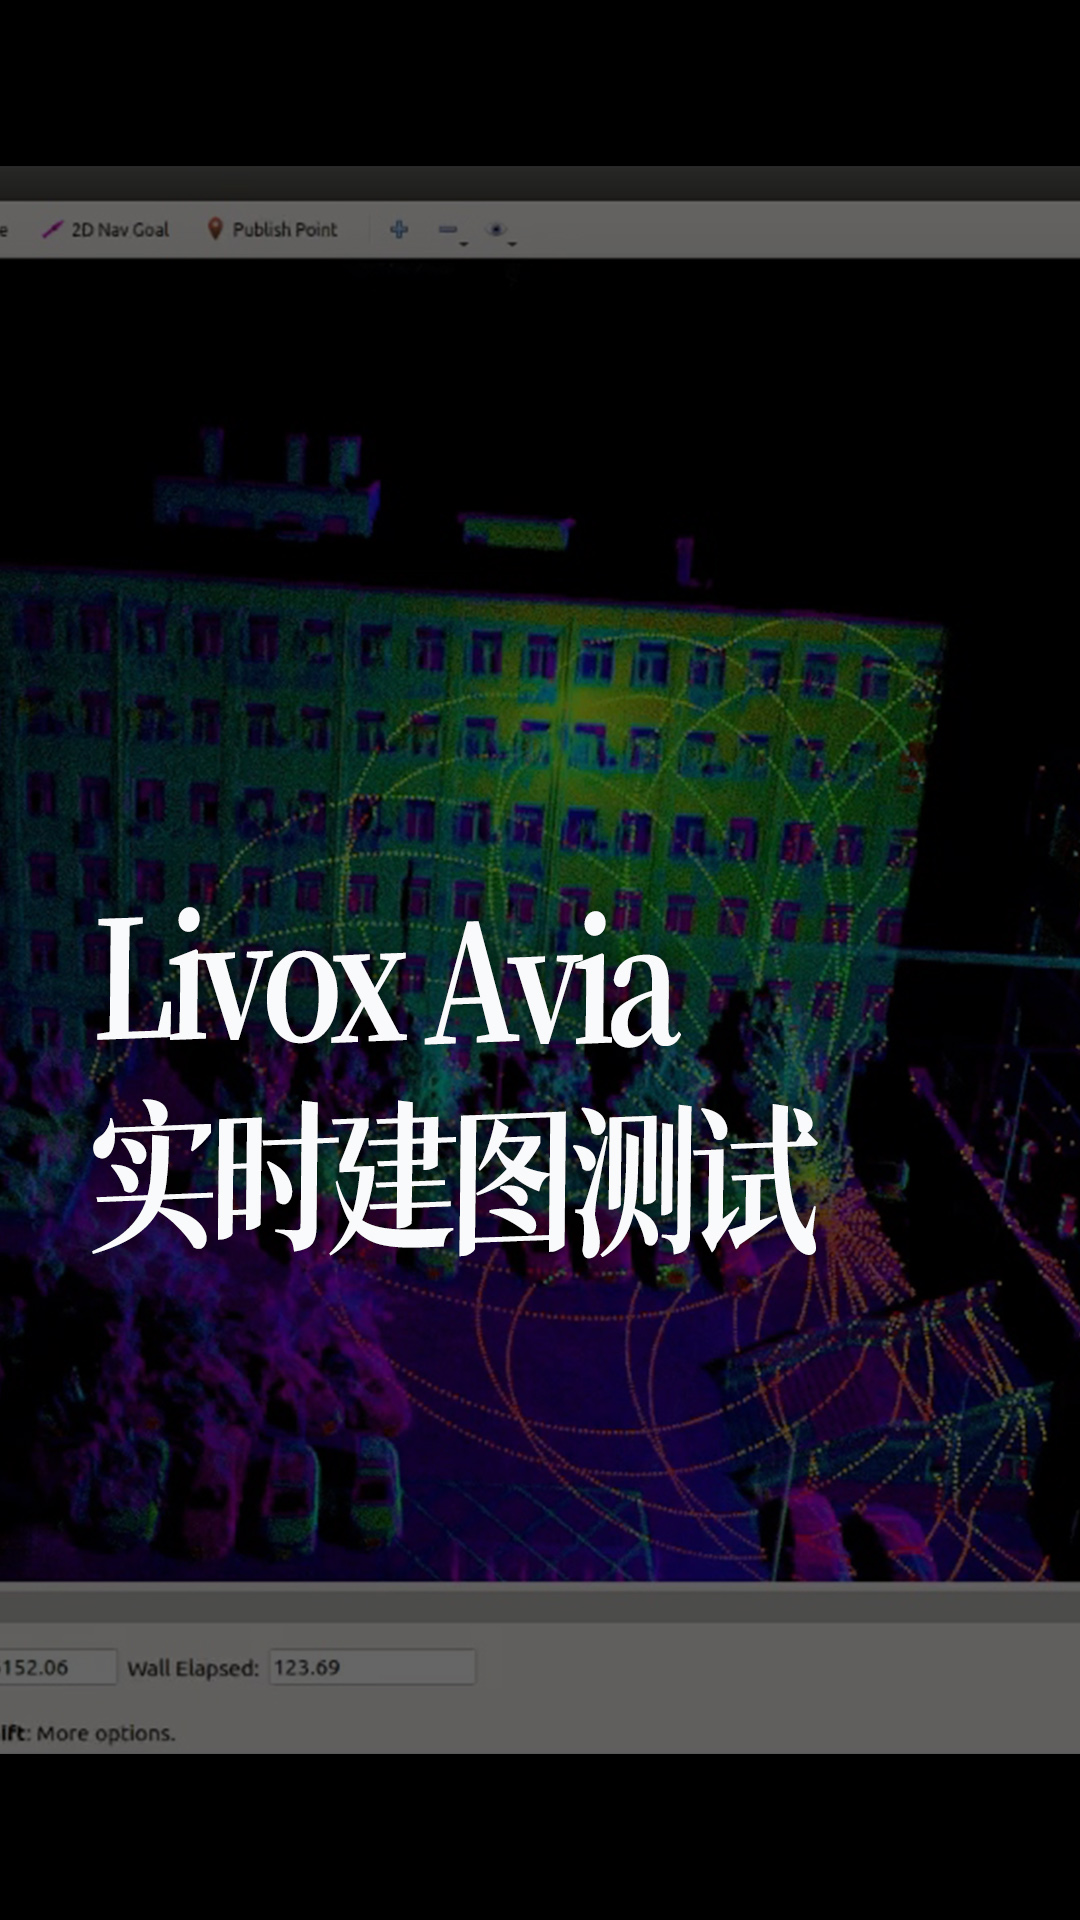 Livox Avia实时建图测试